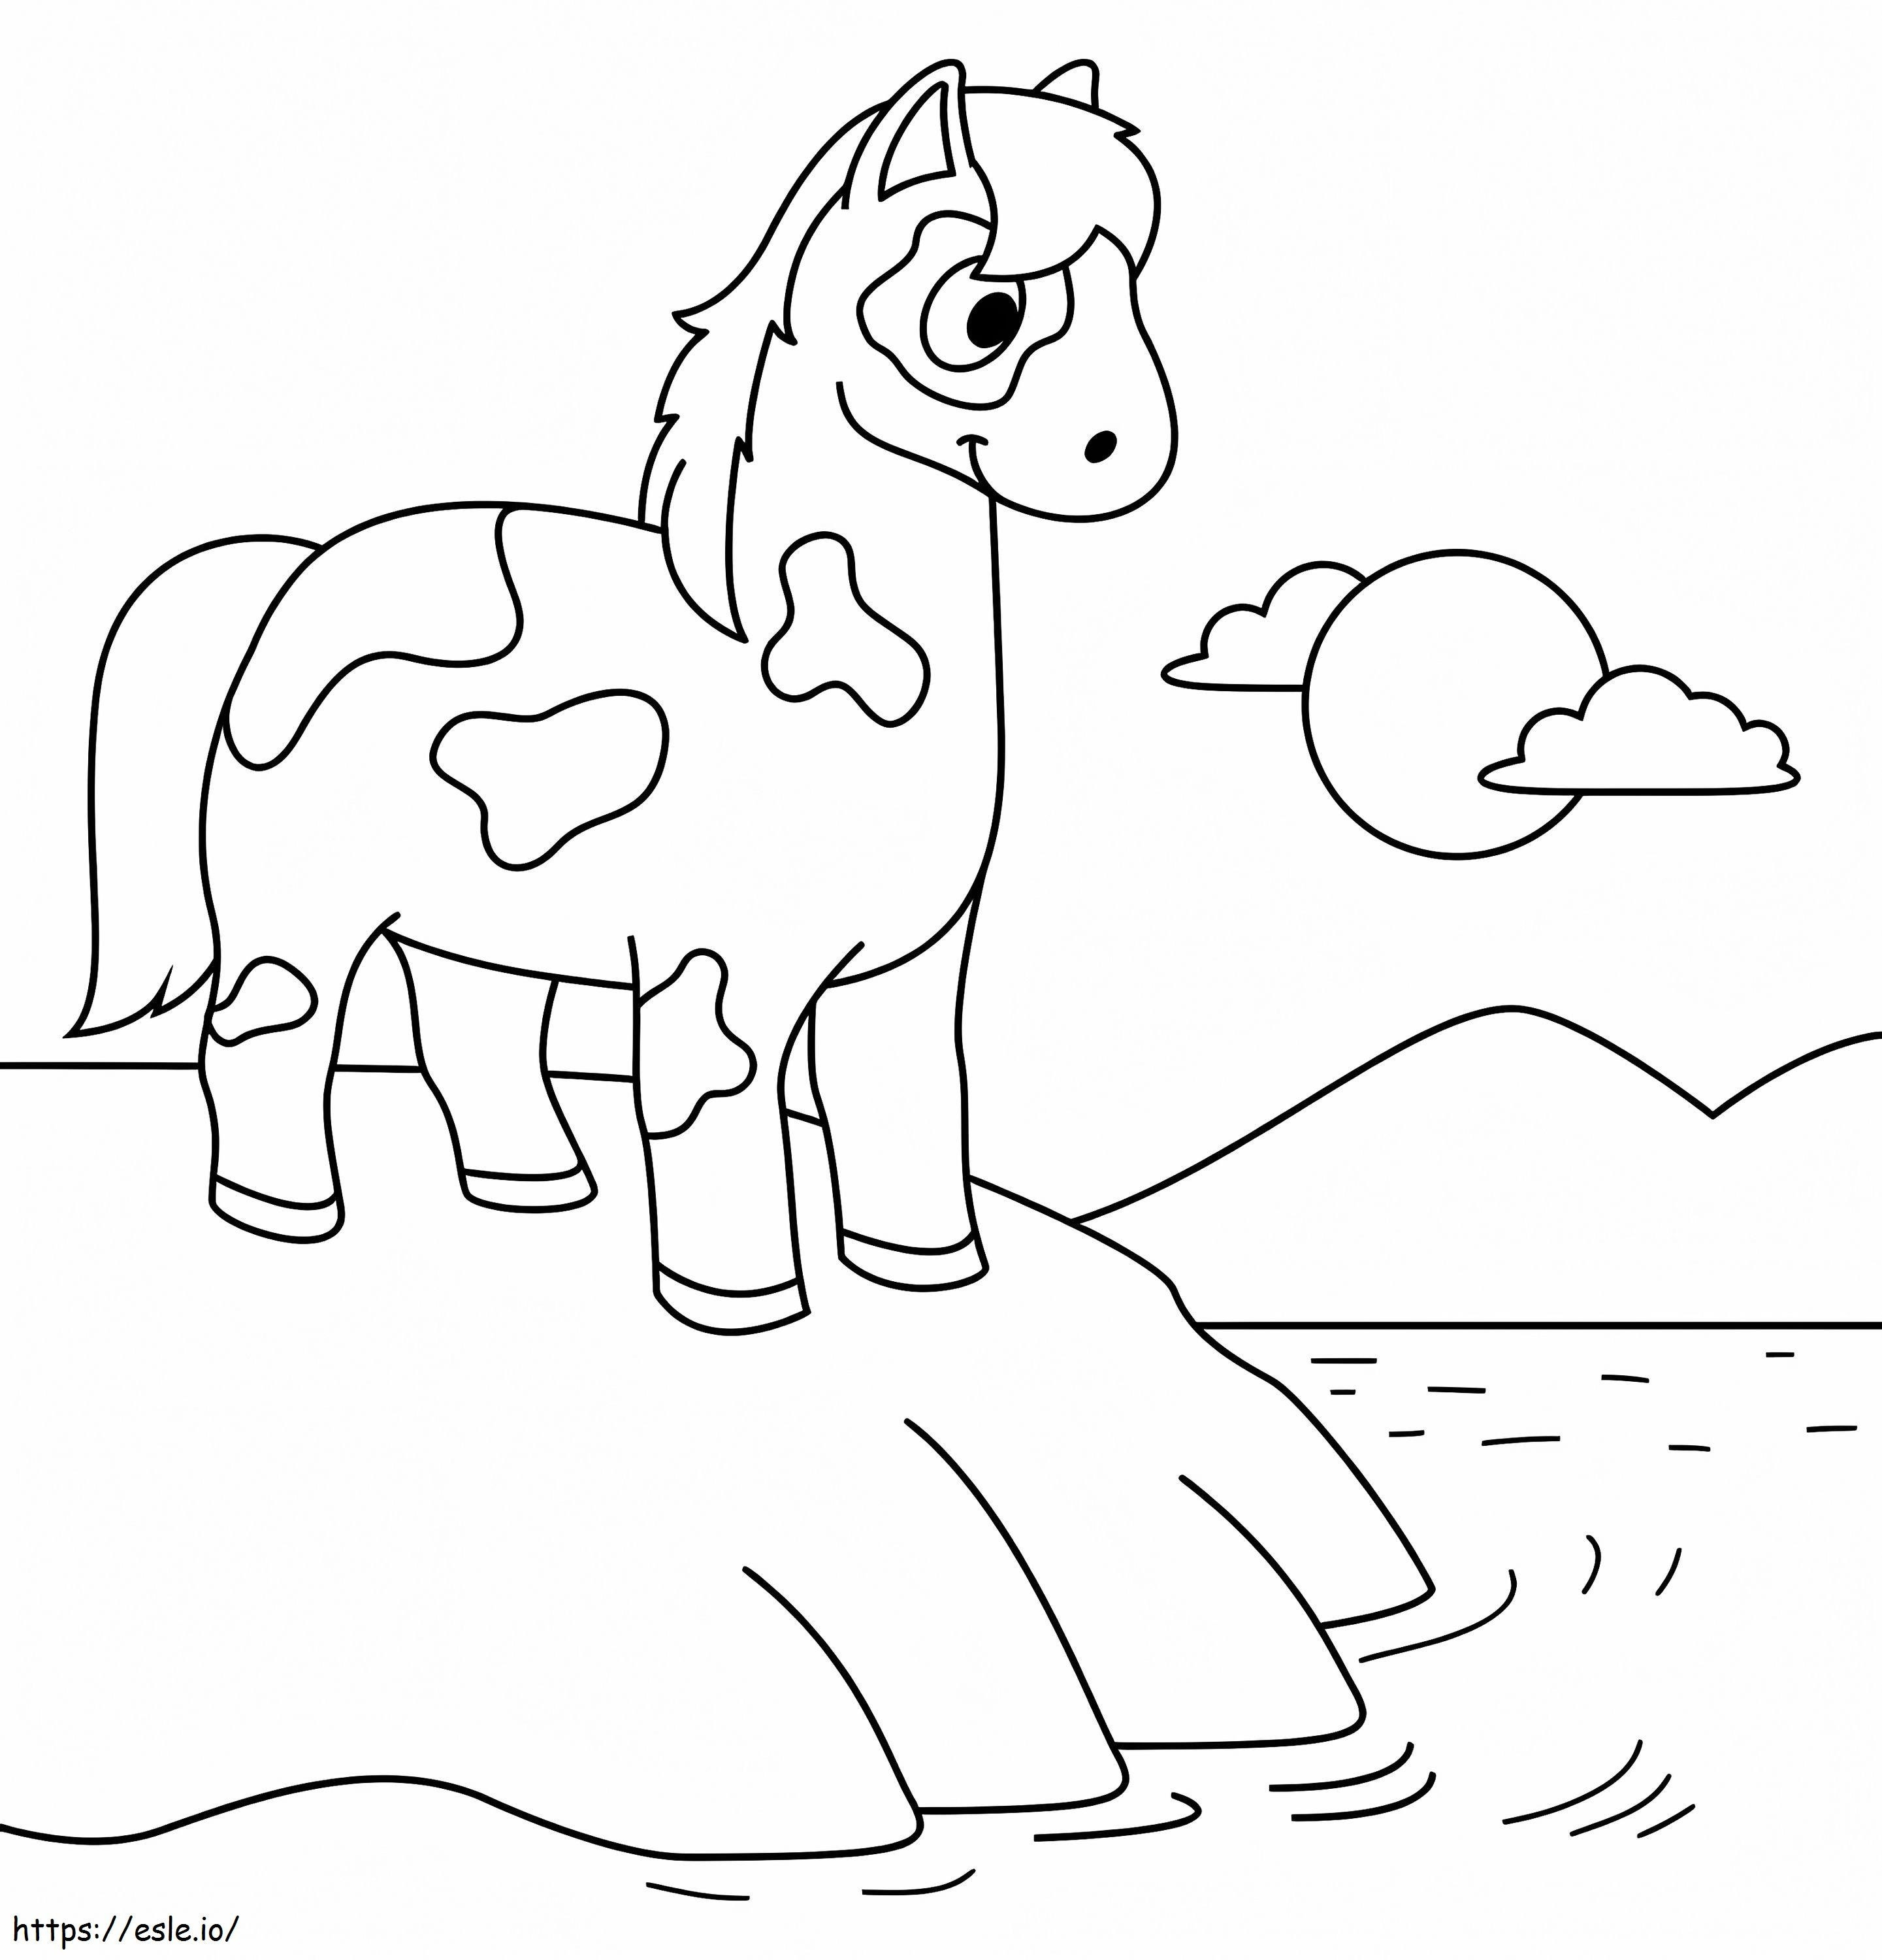 Pferd am Strand ausmalbilder